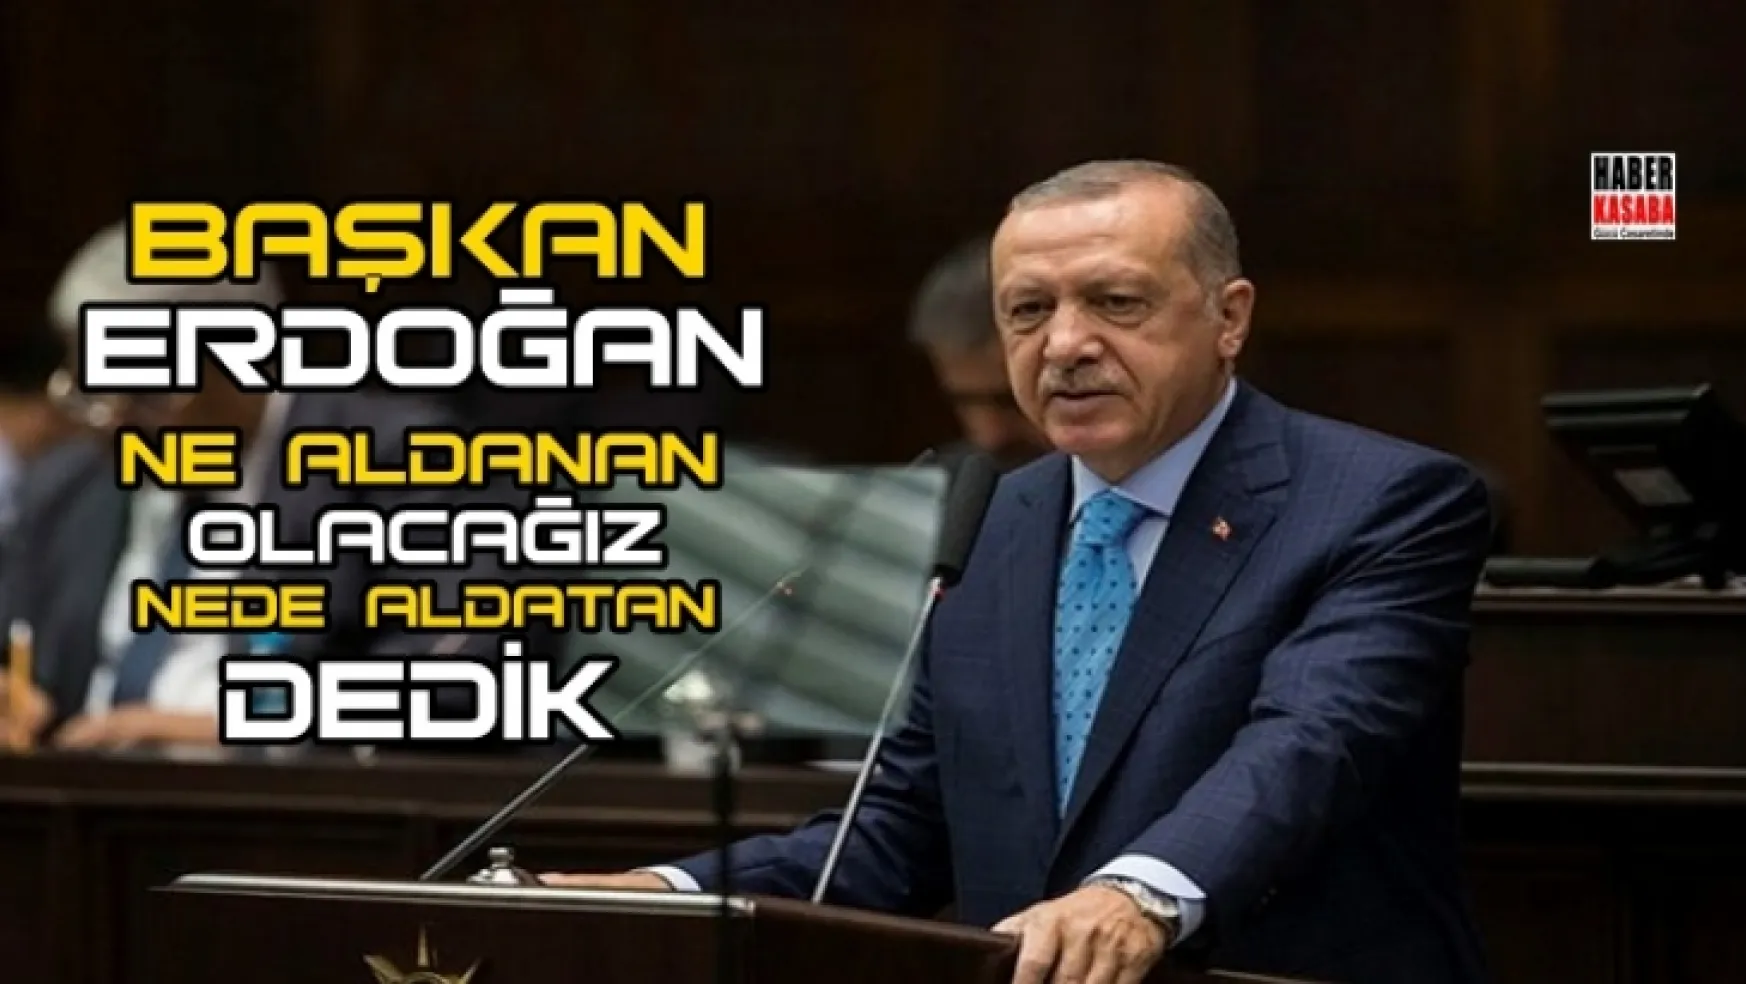 Başkan Erdoğan, 'Her zaman dediğimiz gibi, ne aldanan olacağız ne de aldatan dedik ve bu gerçeği bir kez daha uygulamaya geçirdik.